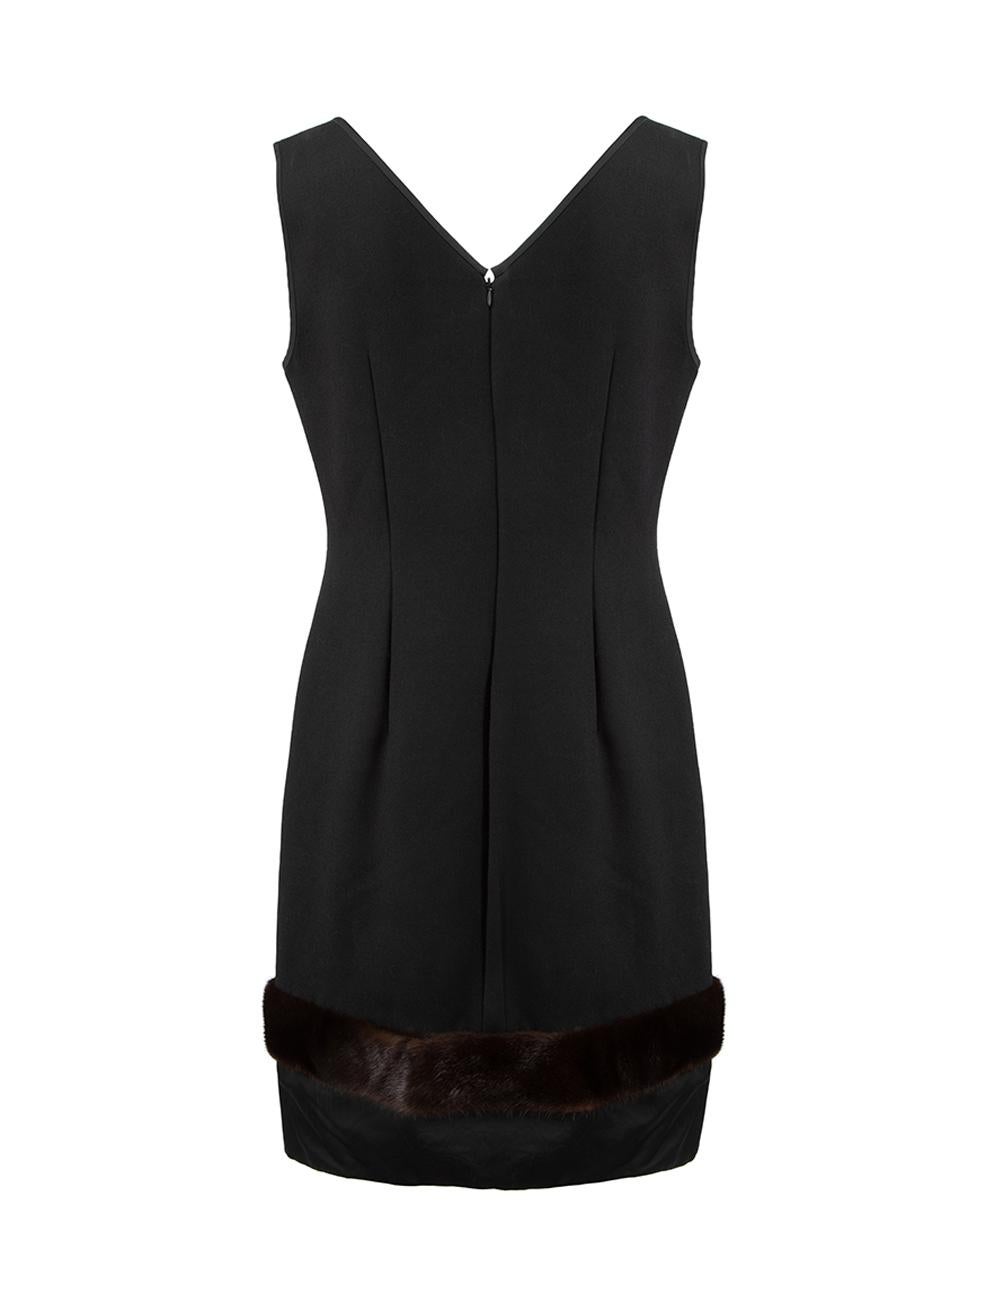 Max Mara 'S Max Mara Black Fur Trim Detail Mini Dress Size L In Good Condition In London, GB